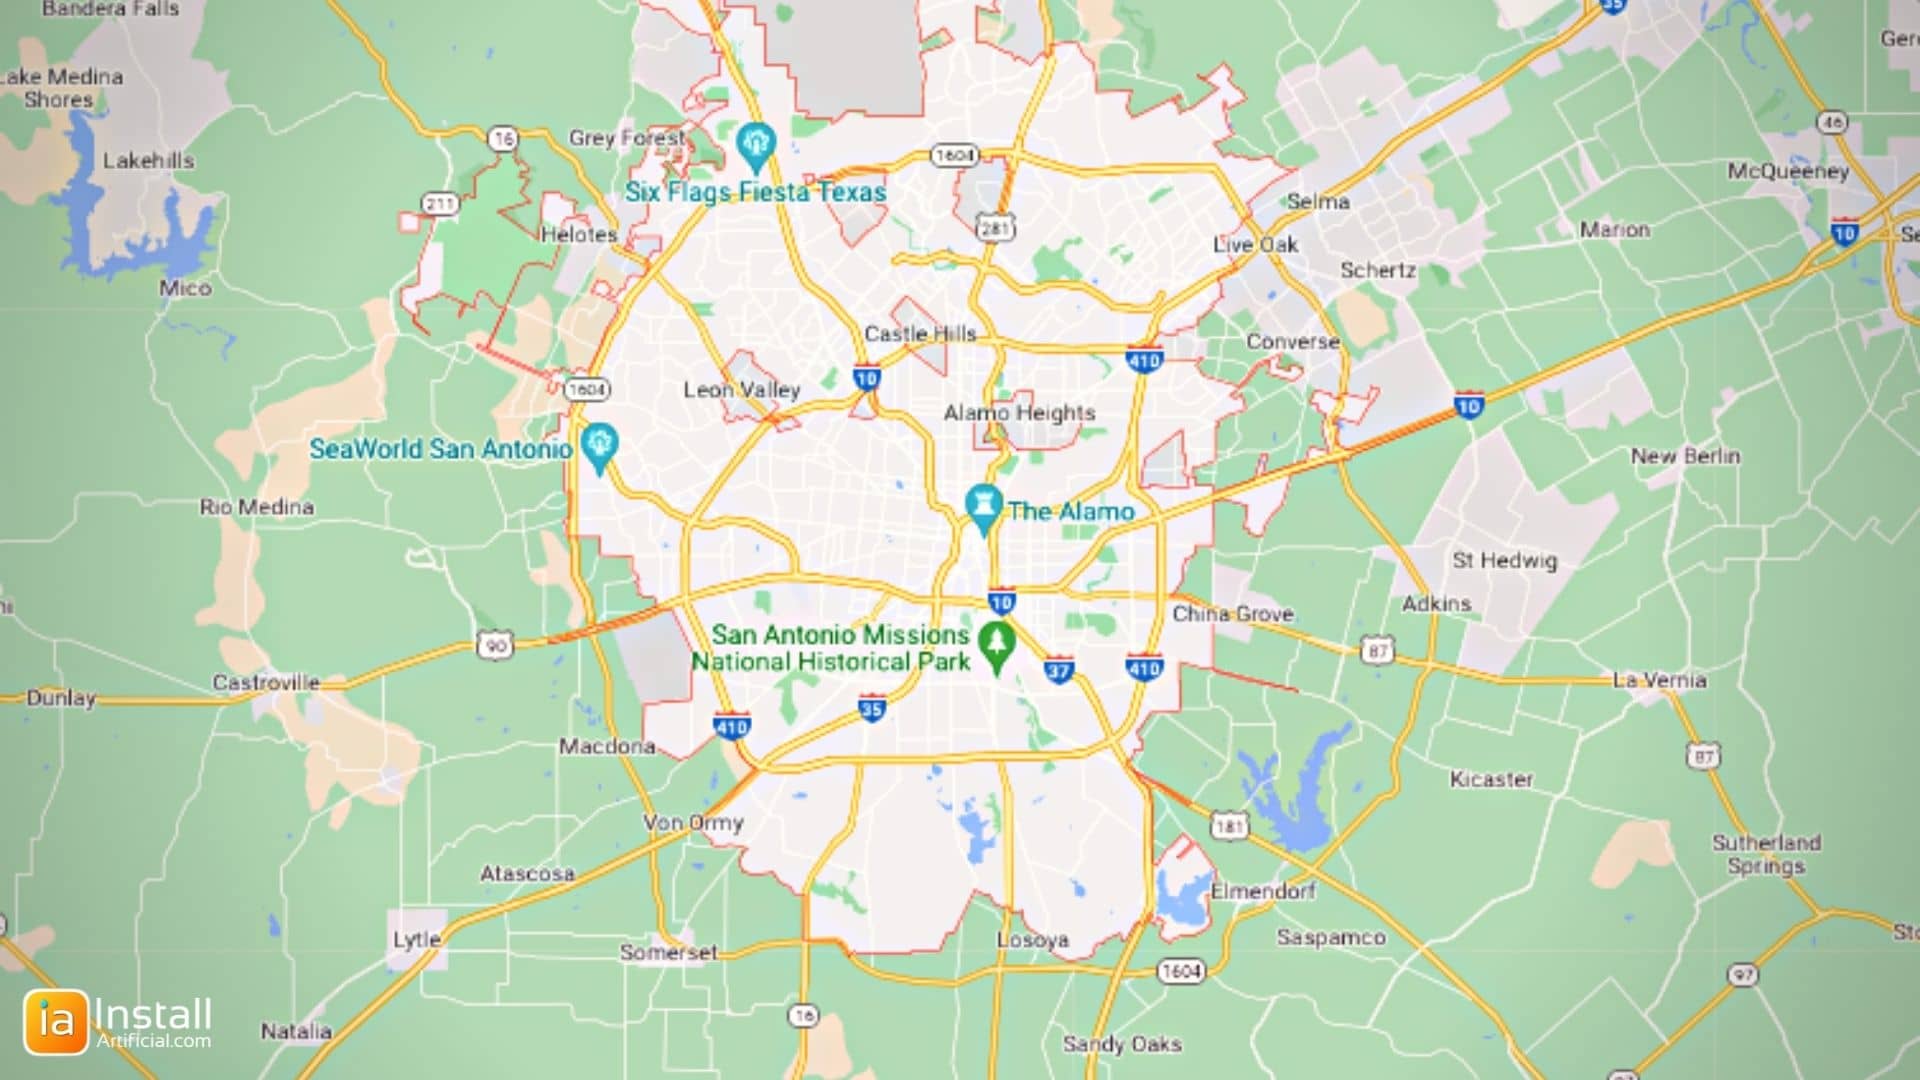 InstallArtificial Location Map - San Antonio Texas